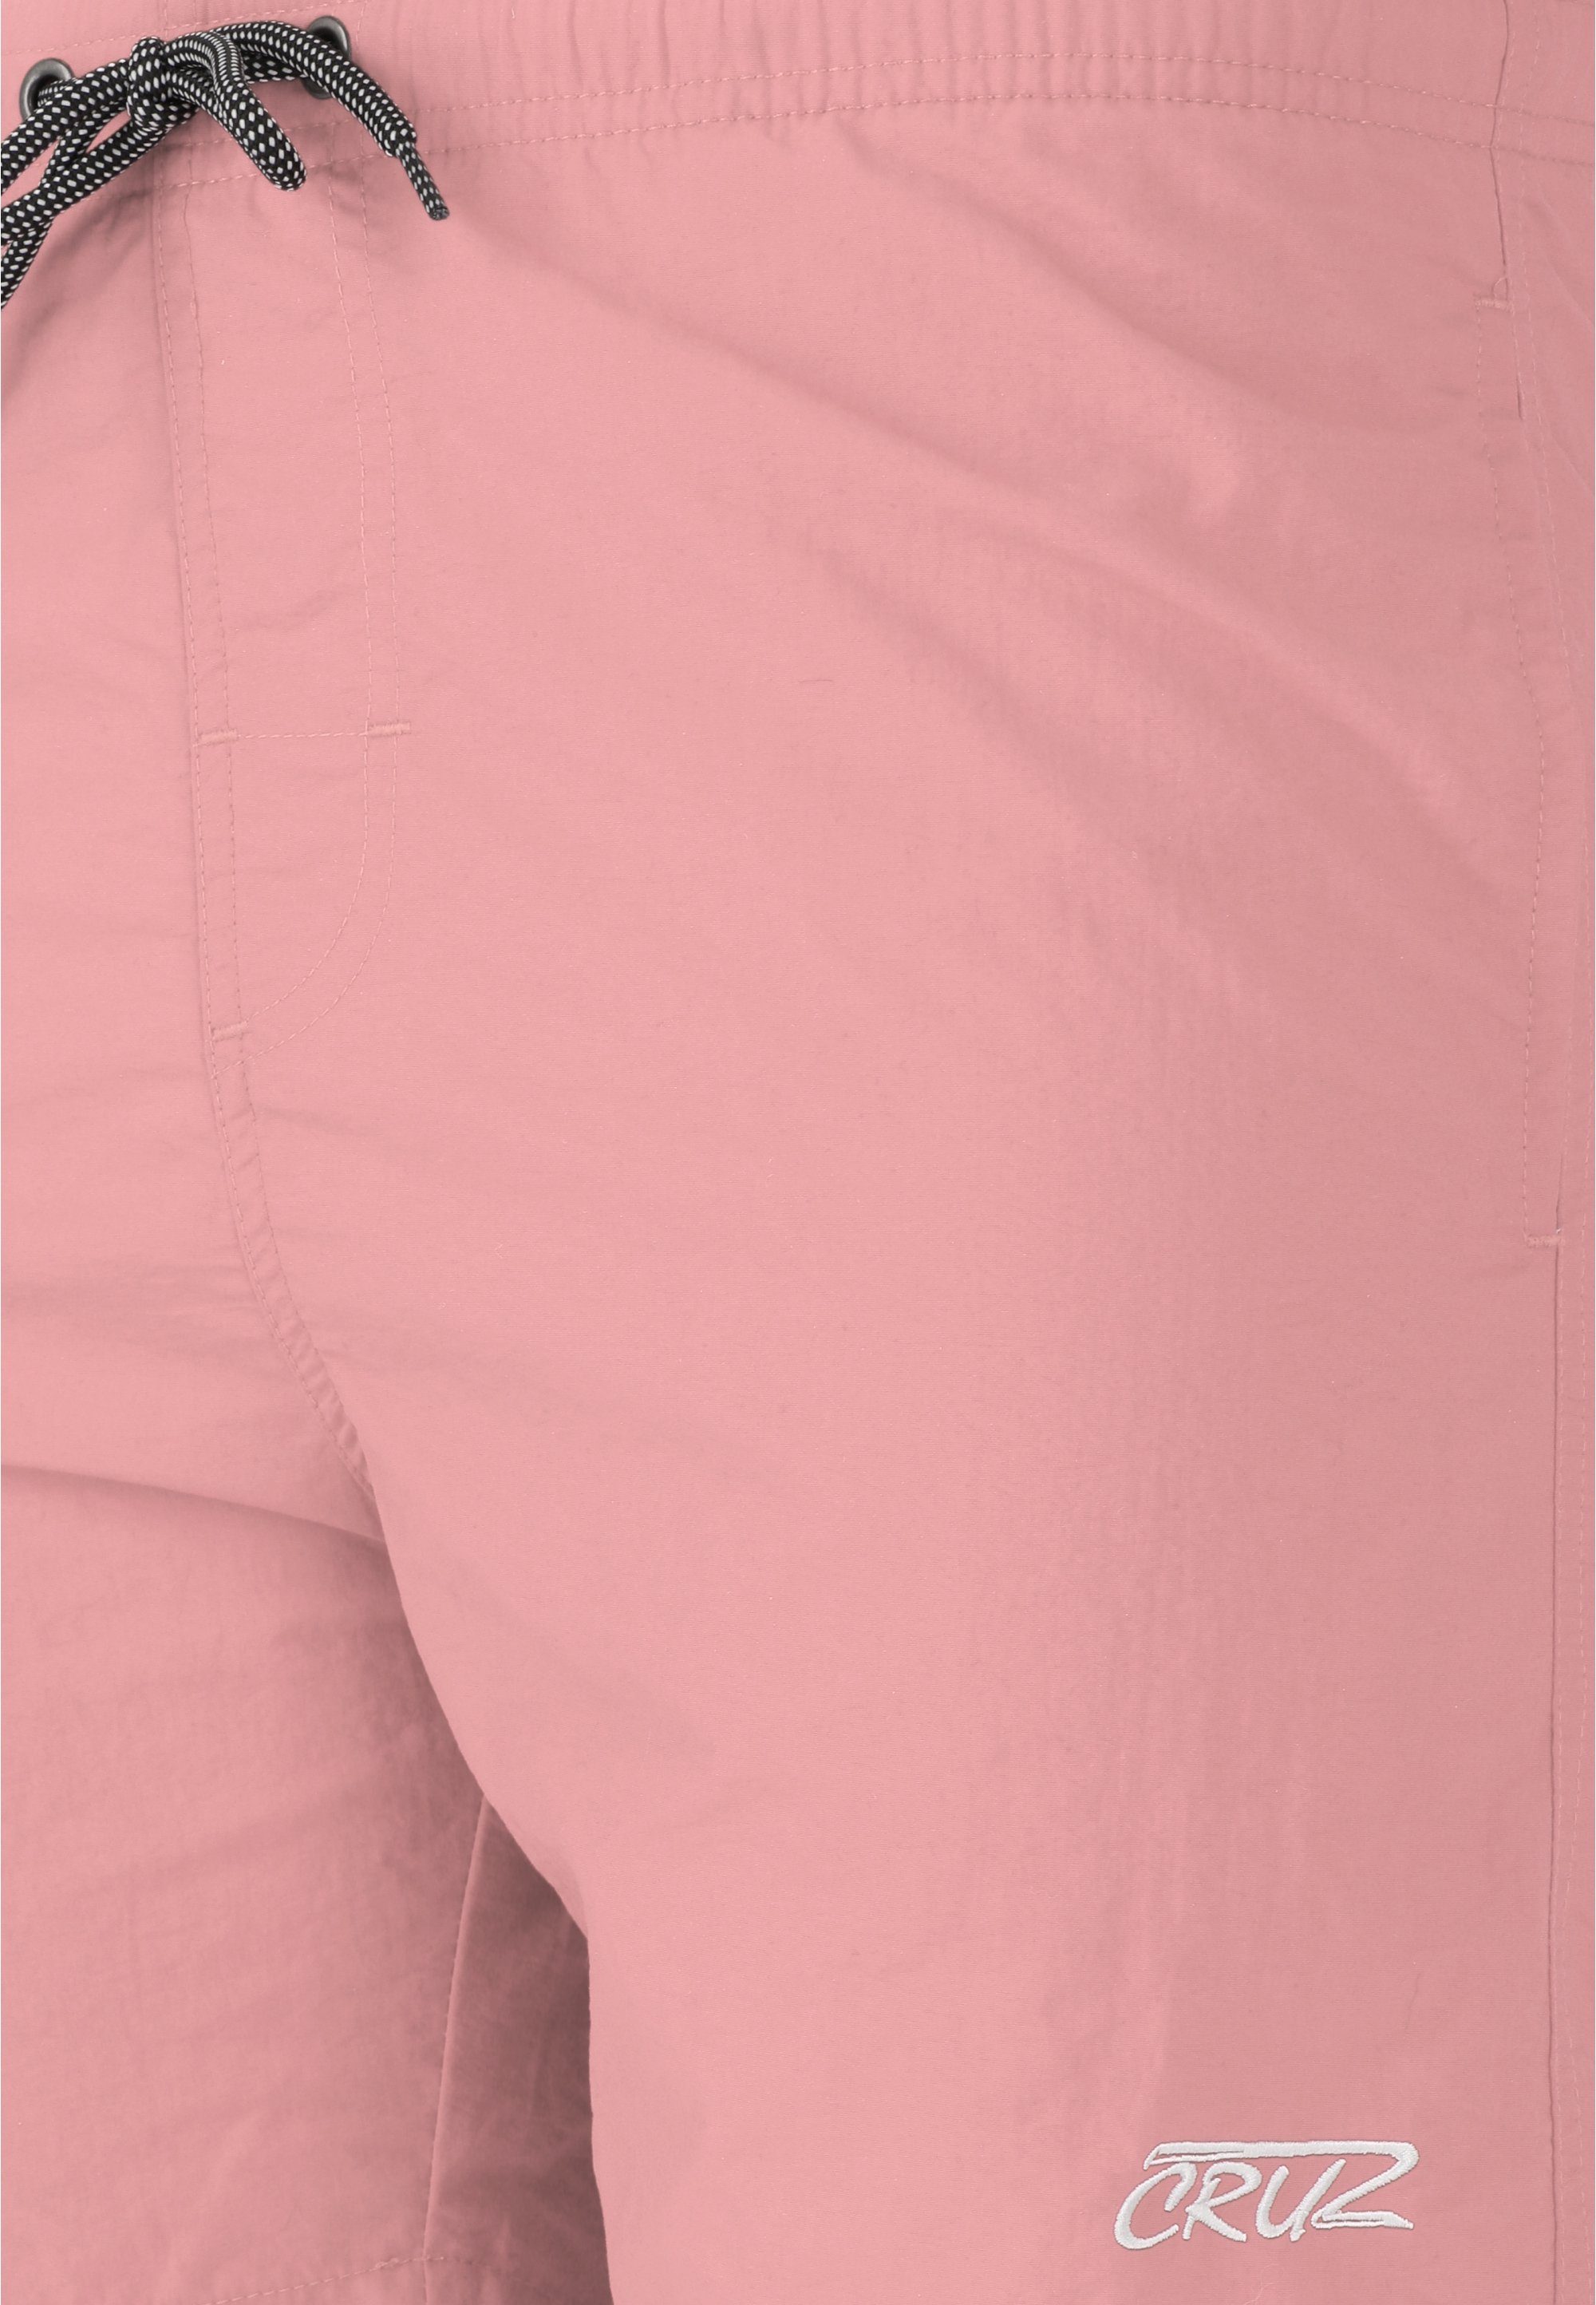 CRUZ Badehose Clemont klassischem rosa Design in